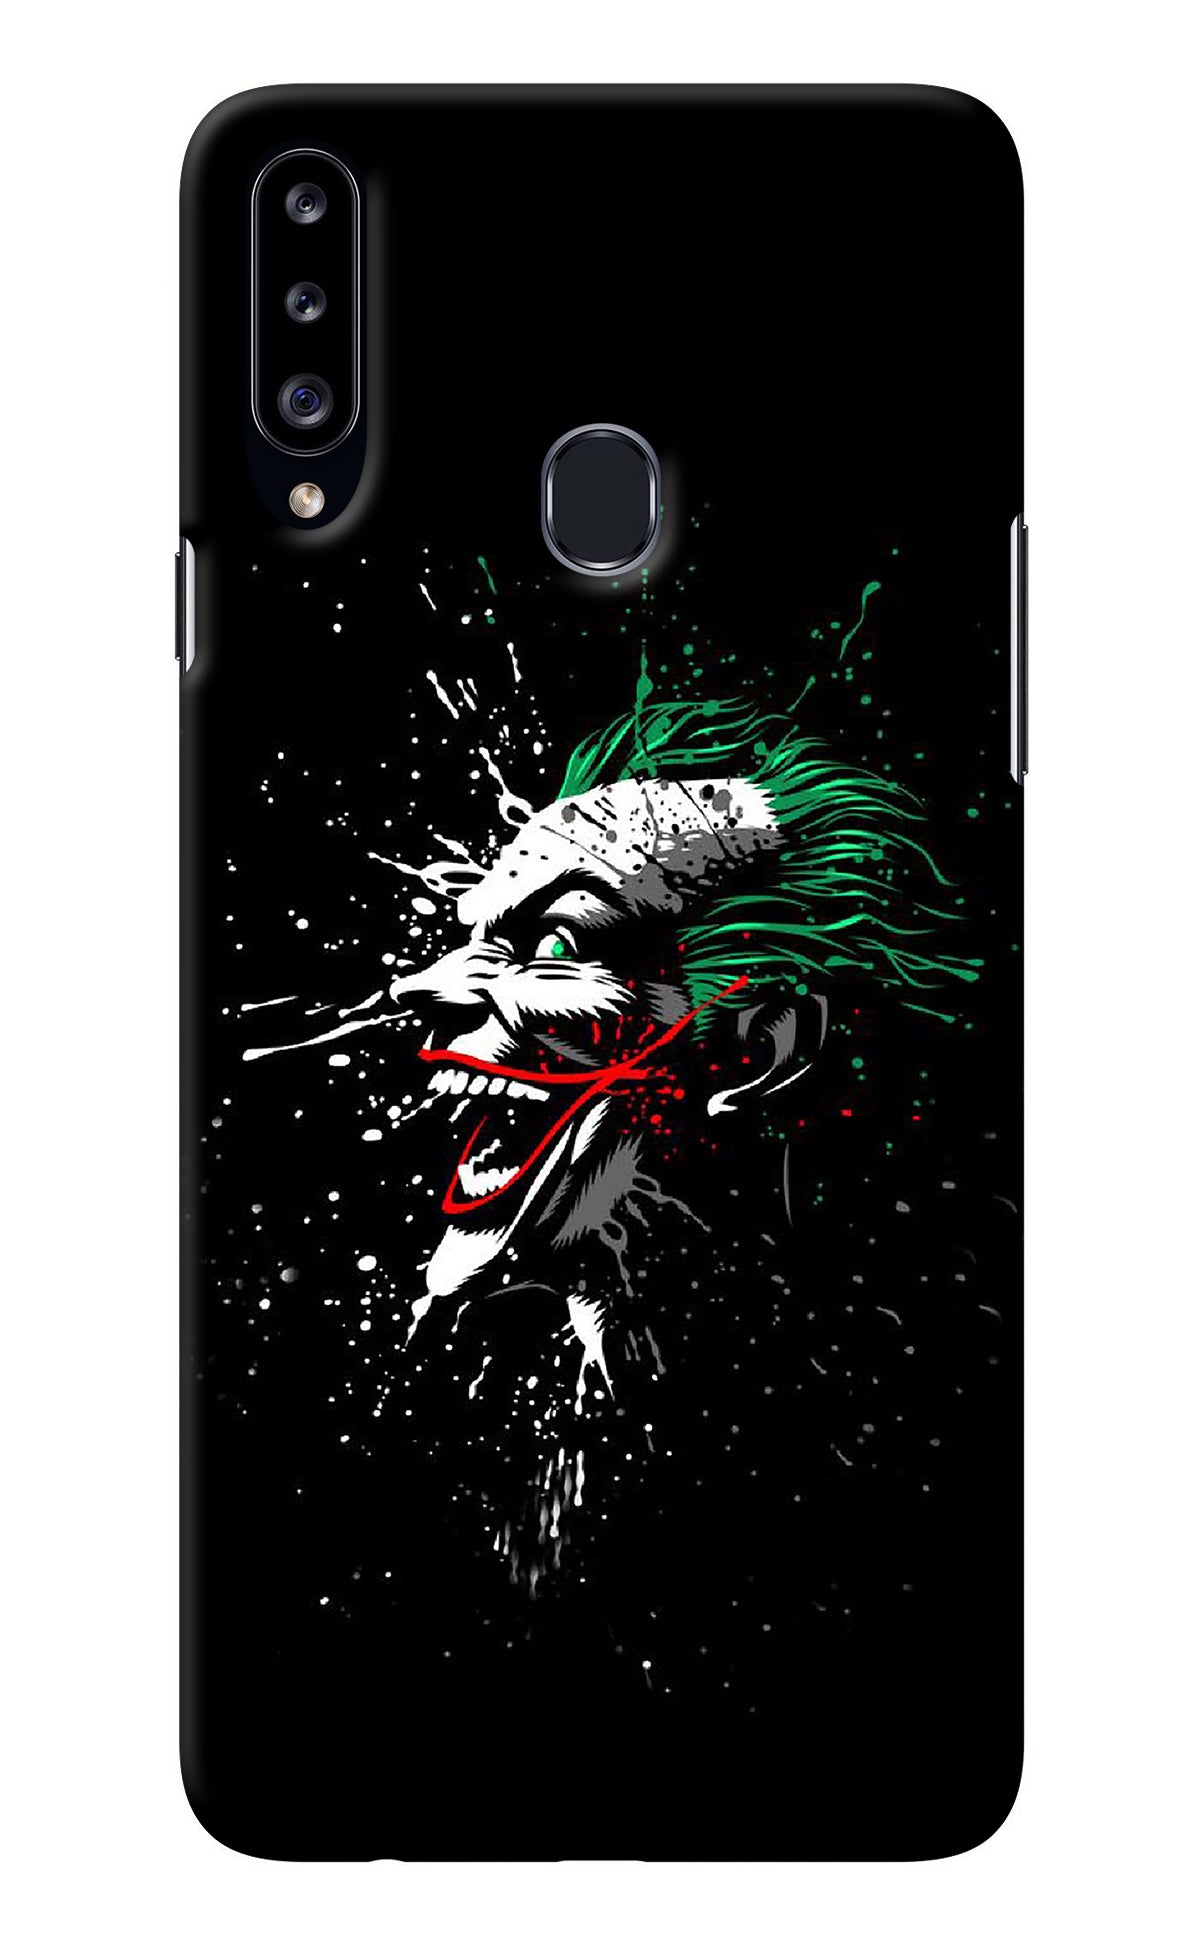 Joker Samsung A20s Back Cover